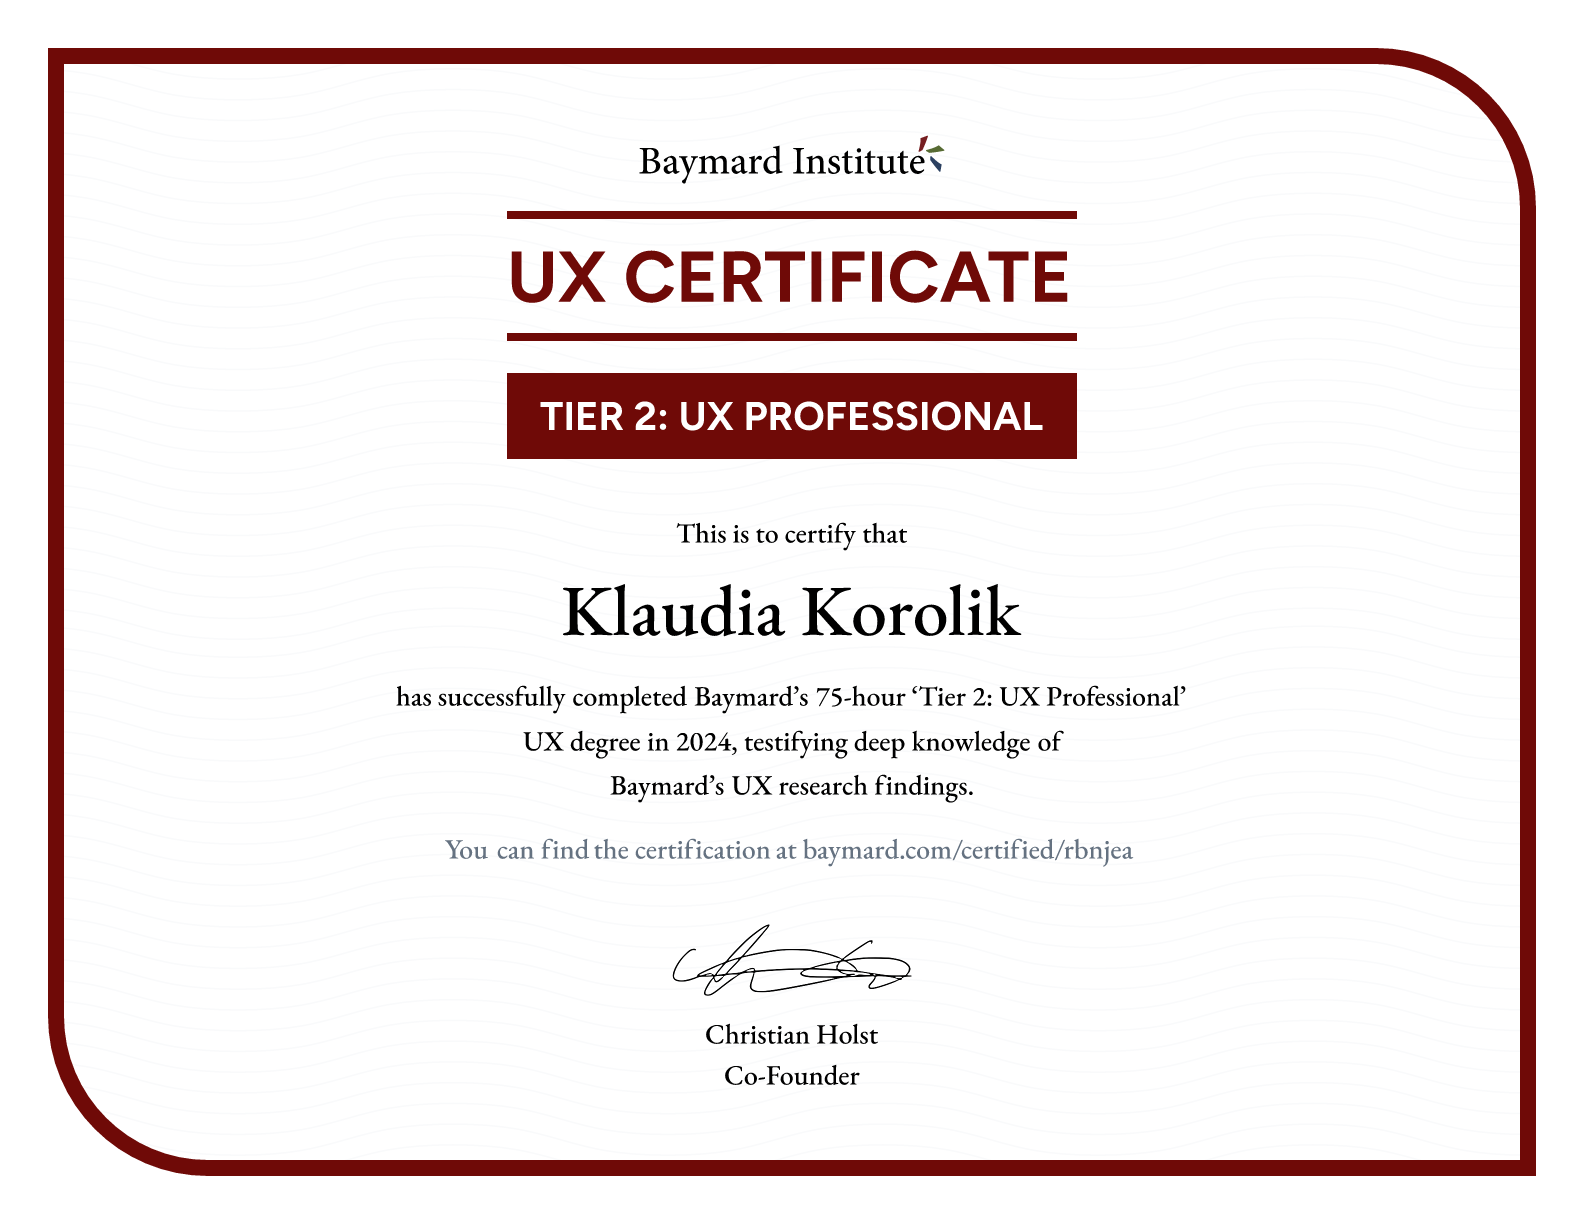 Klaudia Korolik’s certificate